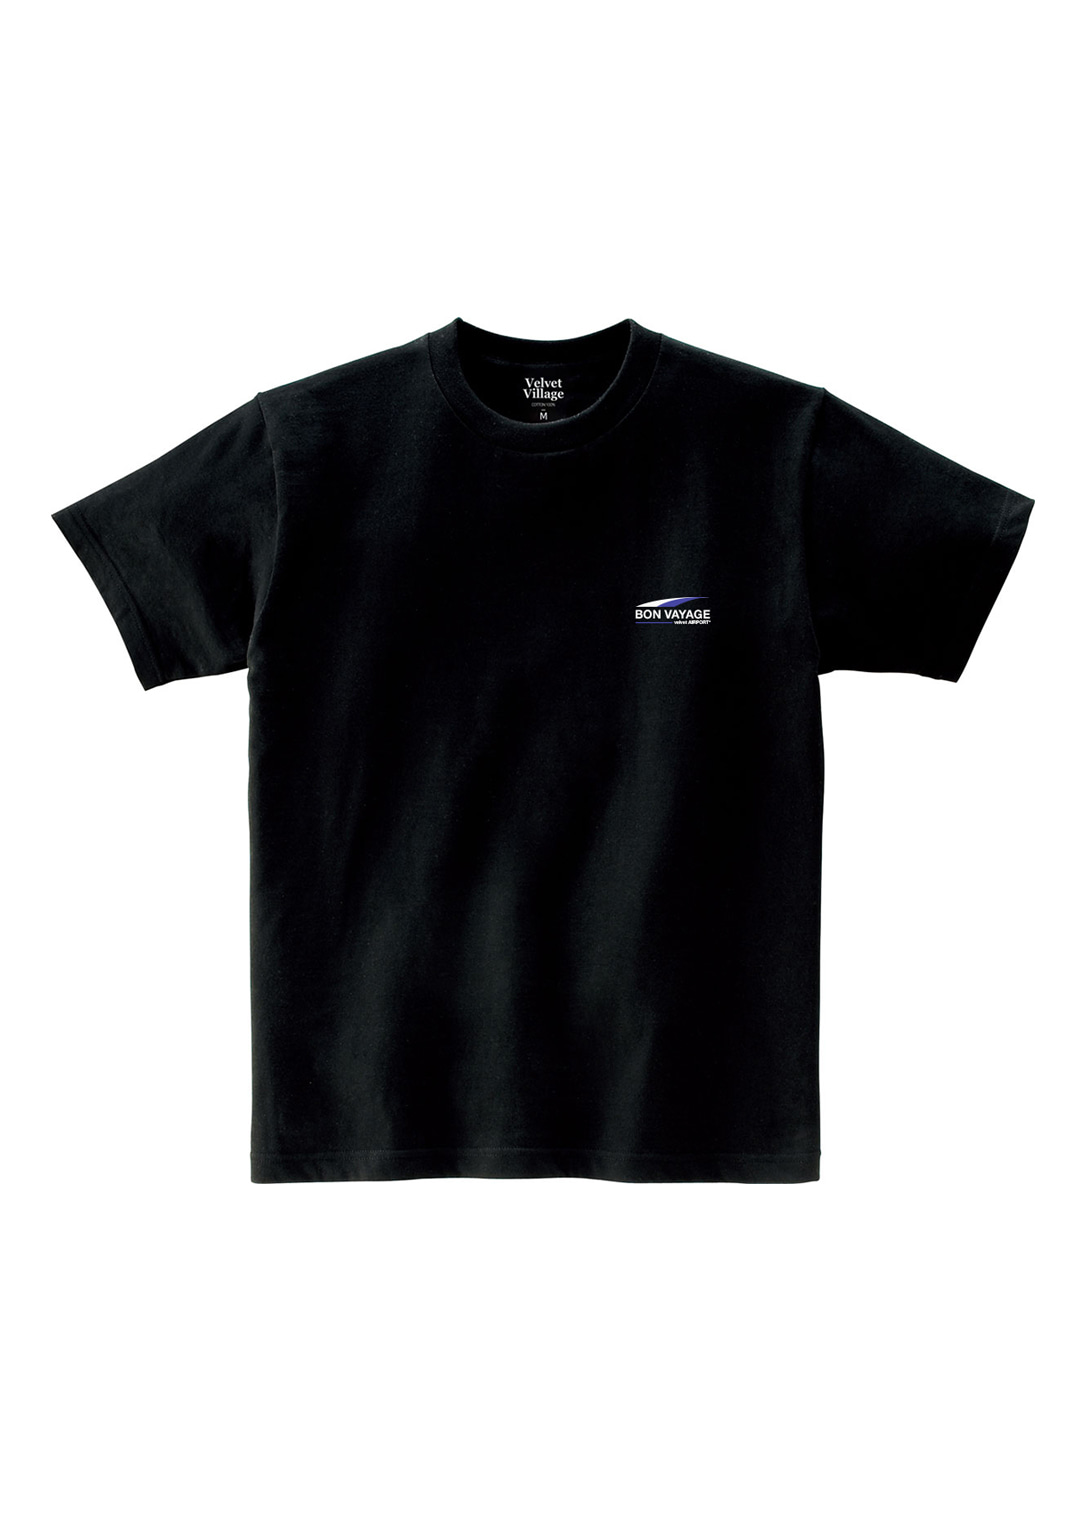 Bon voyage T-shirt (Black)